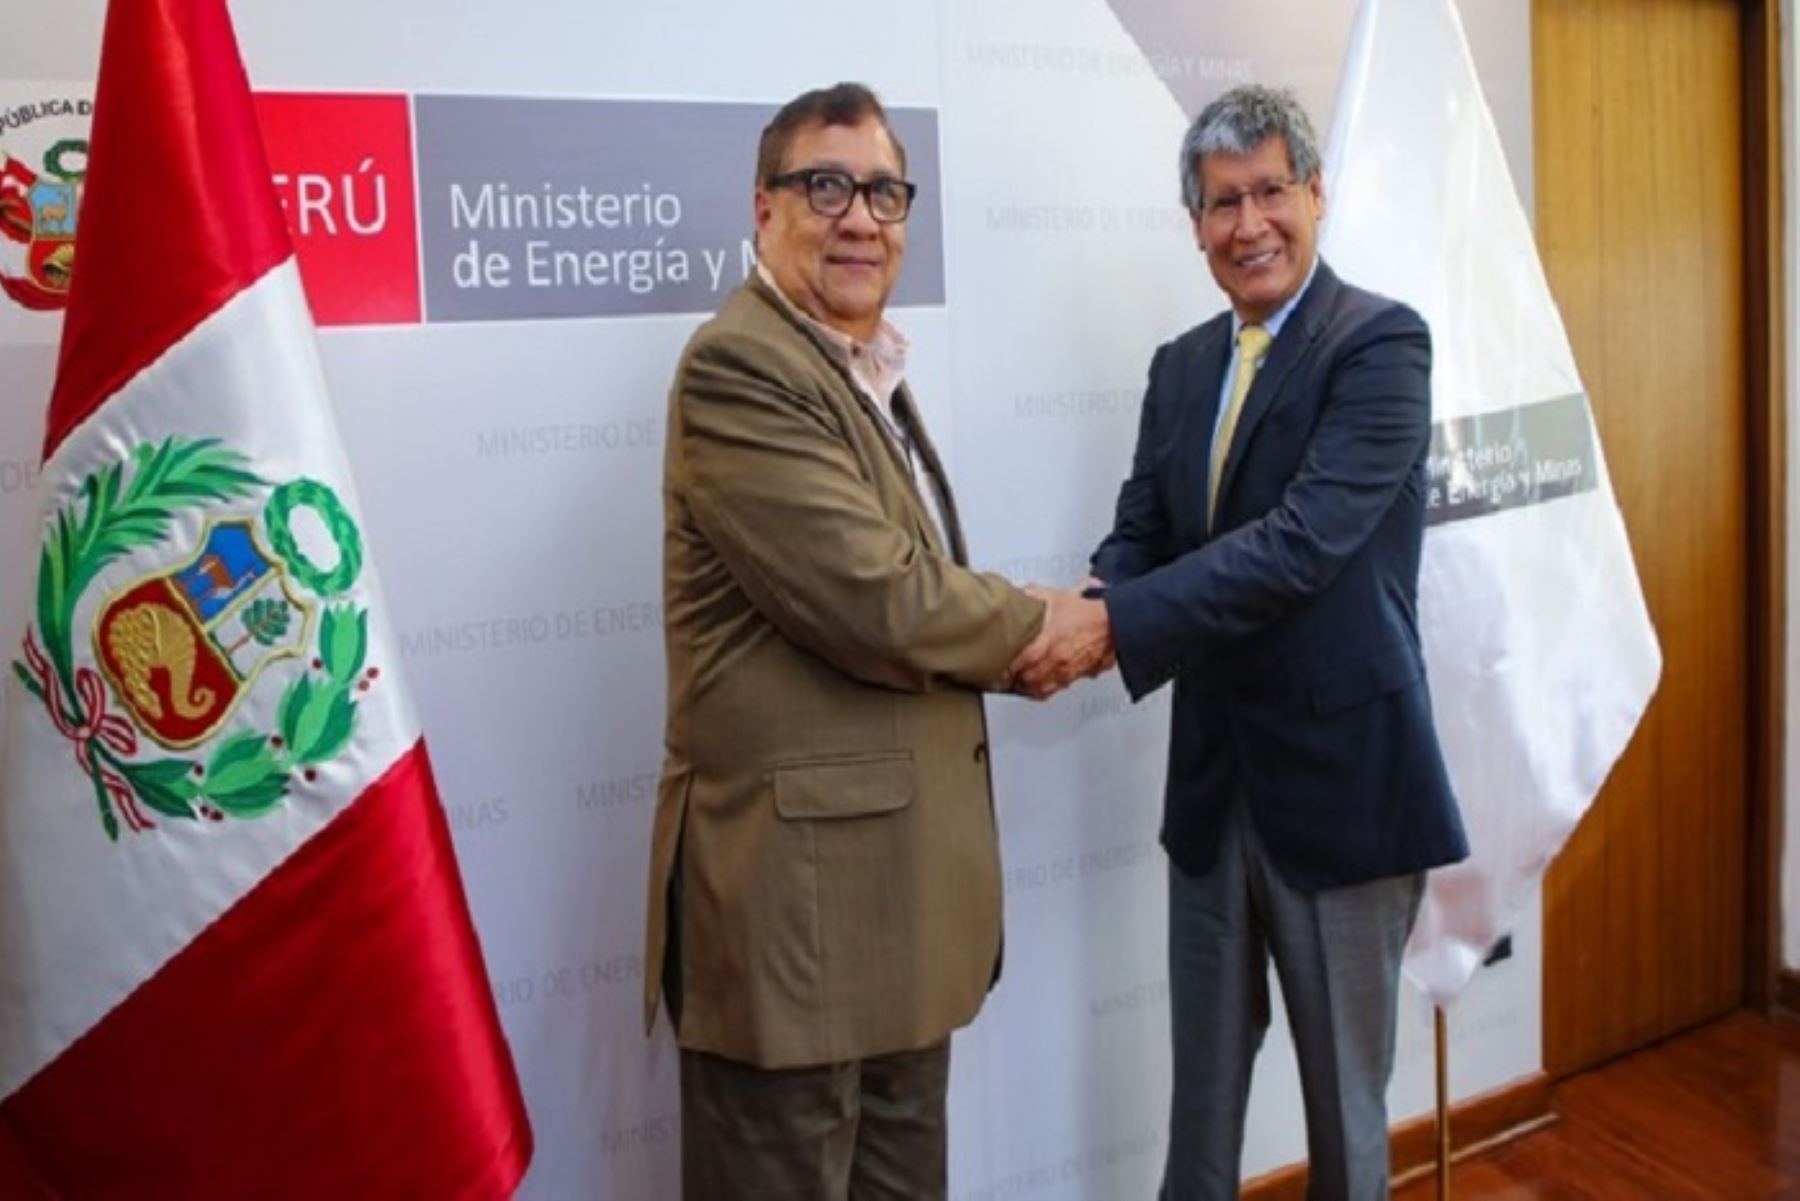 El Ministerio de Energía y Minas y el Gobierno Regional de Ayacucho articulan acciones para llevar gas a un menor precio a ese importante departamento del sur peruano.